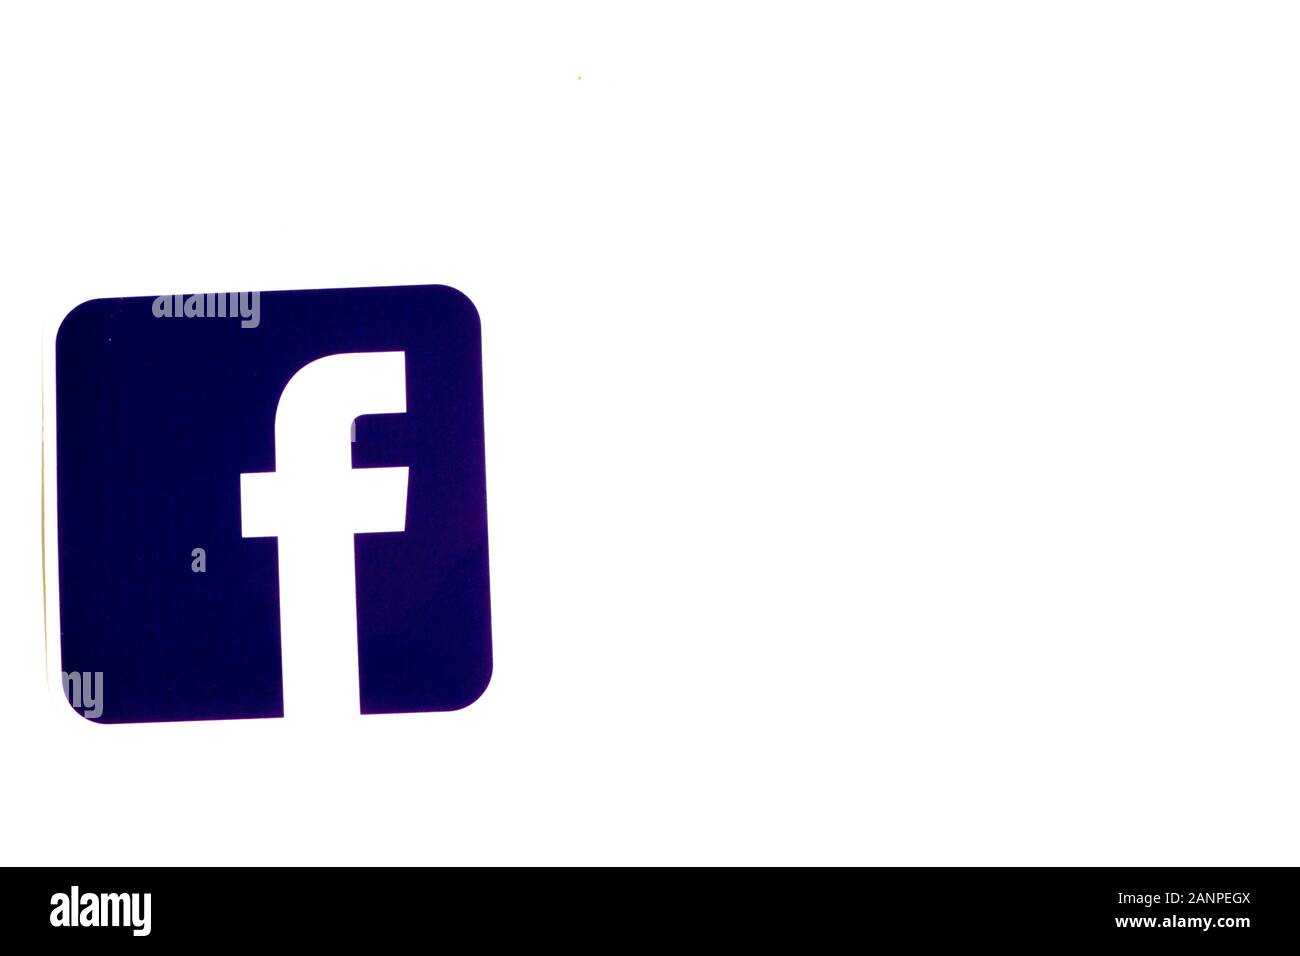 Los Angeles, Californie, États-Unis - 17 janvier 2020: Logo Facebook sur fond blanc avec espace de copie. Icône des médias sociaux, éditorial illustratif Banque D'Images